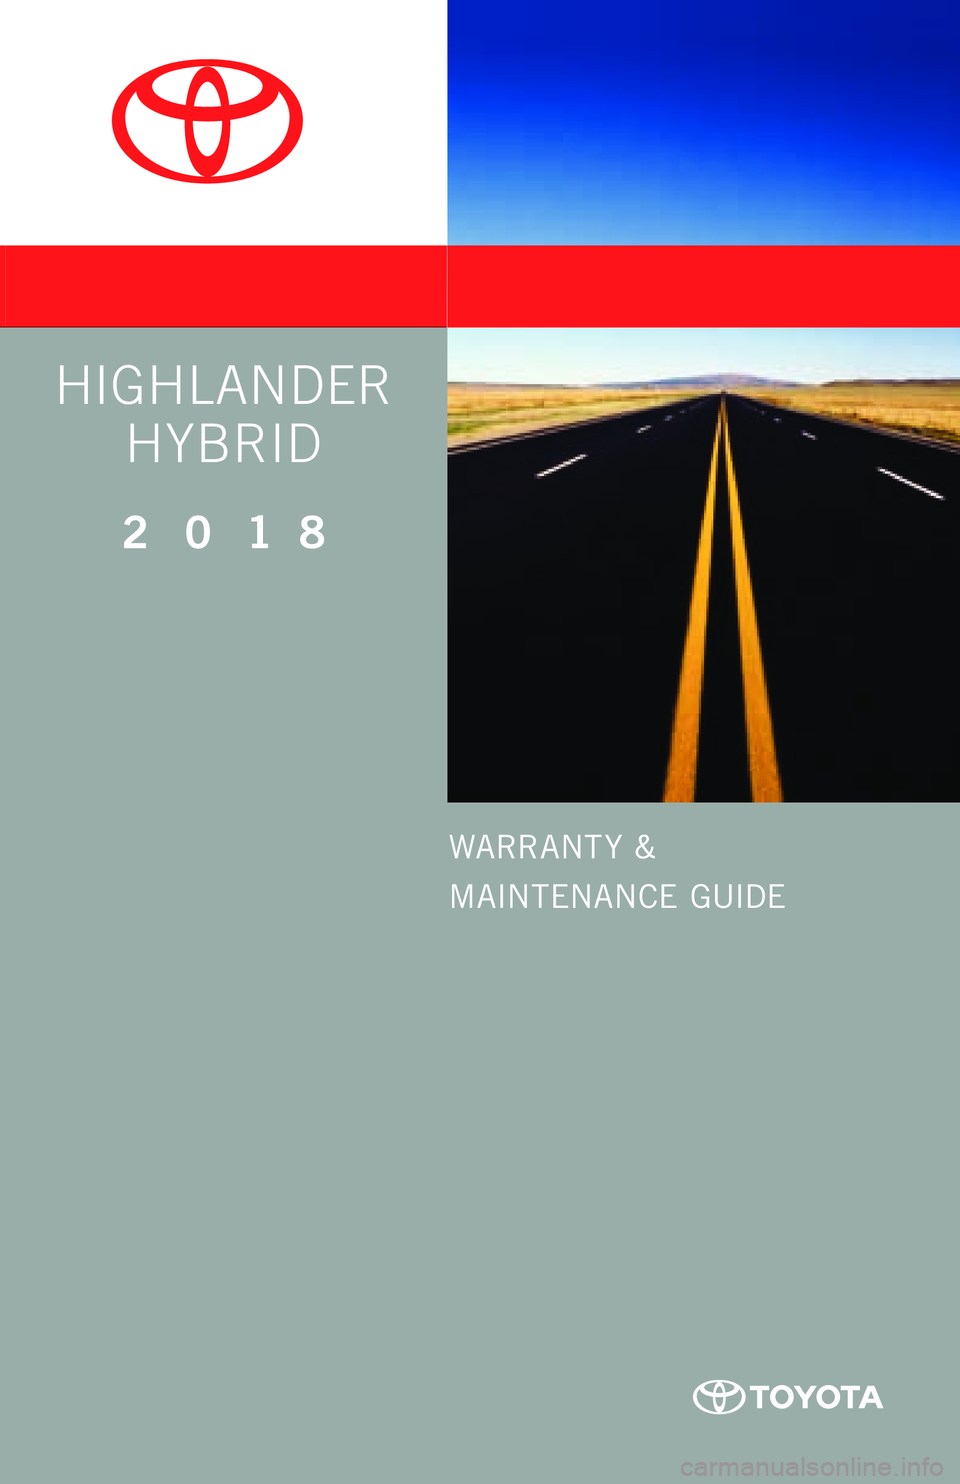 TOYOTA HIGHLANDER HYBRID 2018  Warranties & Maintenance Guides (in English) WARRANT Y &
MAINTENANCE GUIDE
Printed in U.S.A. 9 /17
17-TCS-09994
www.toyota.com
2 0 1 8     
HIGHLANDER HYBRID
QG_17-TCS-09994_WarrMaintGuide_HighlanderHybrid_COVER_1_0F_lm.indd   19/1/17   10:03 AM